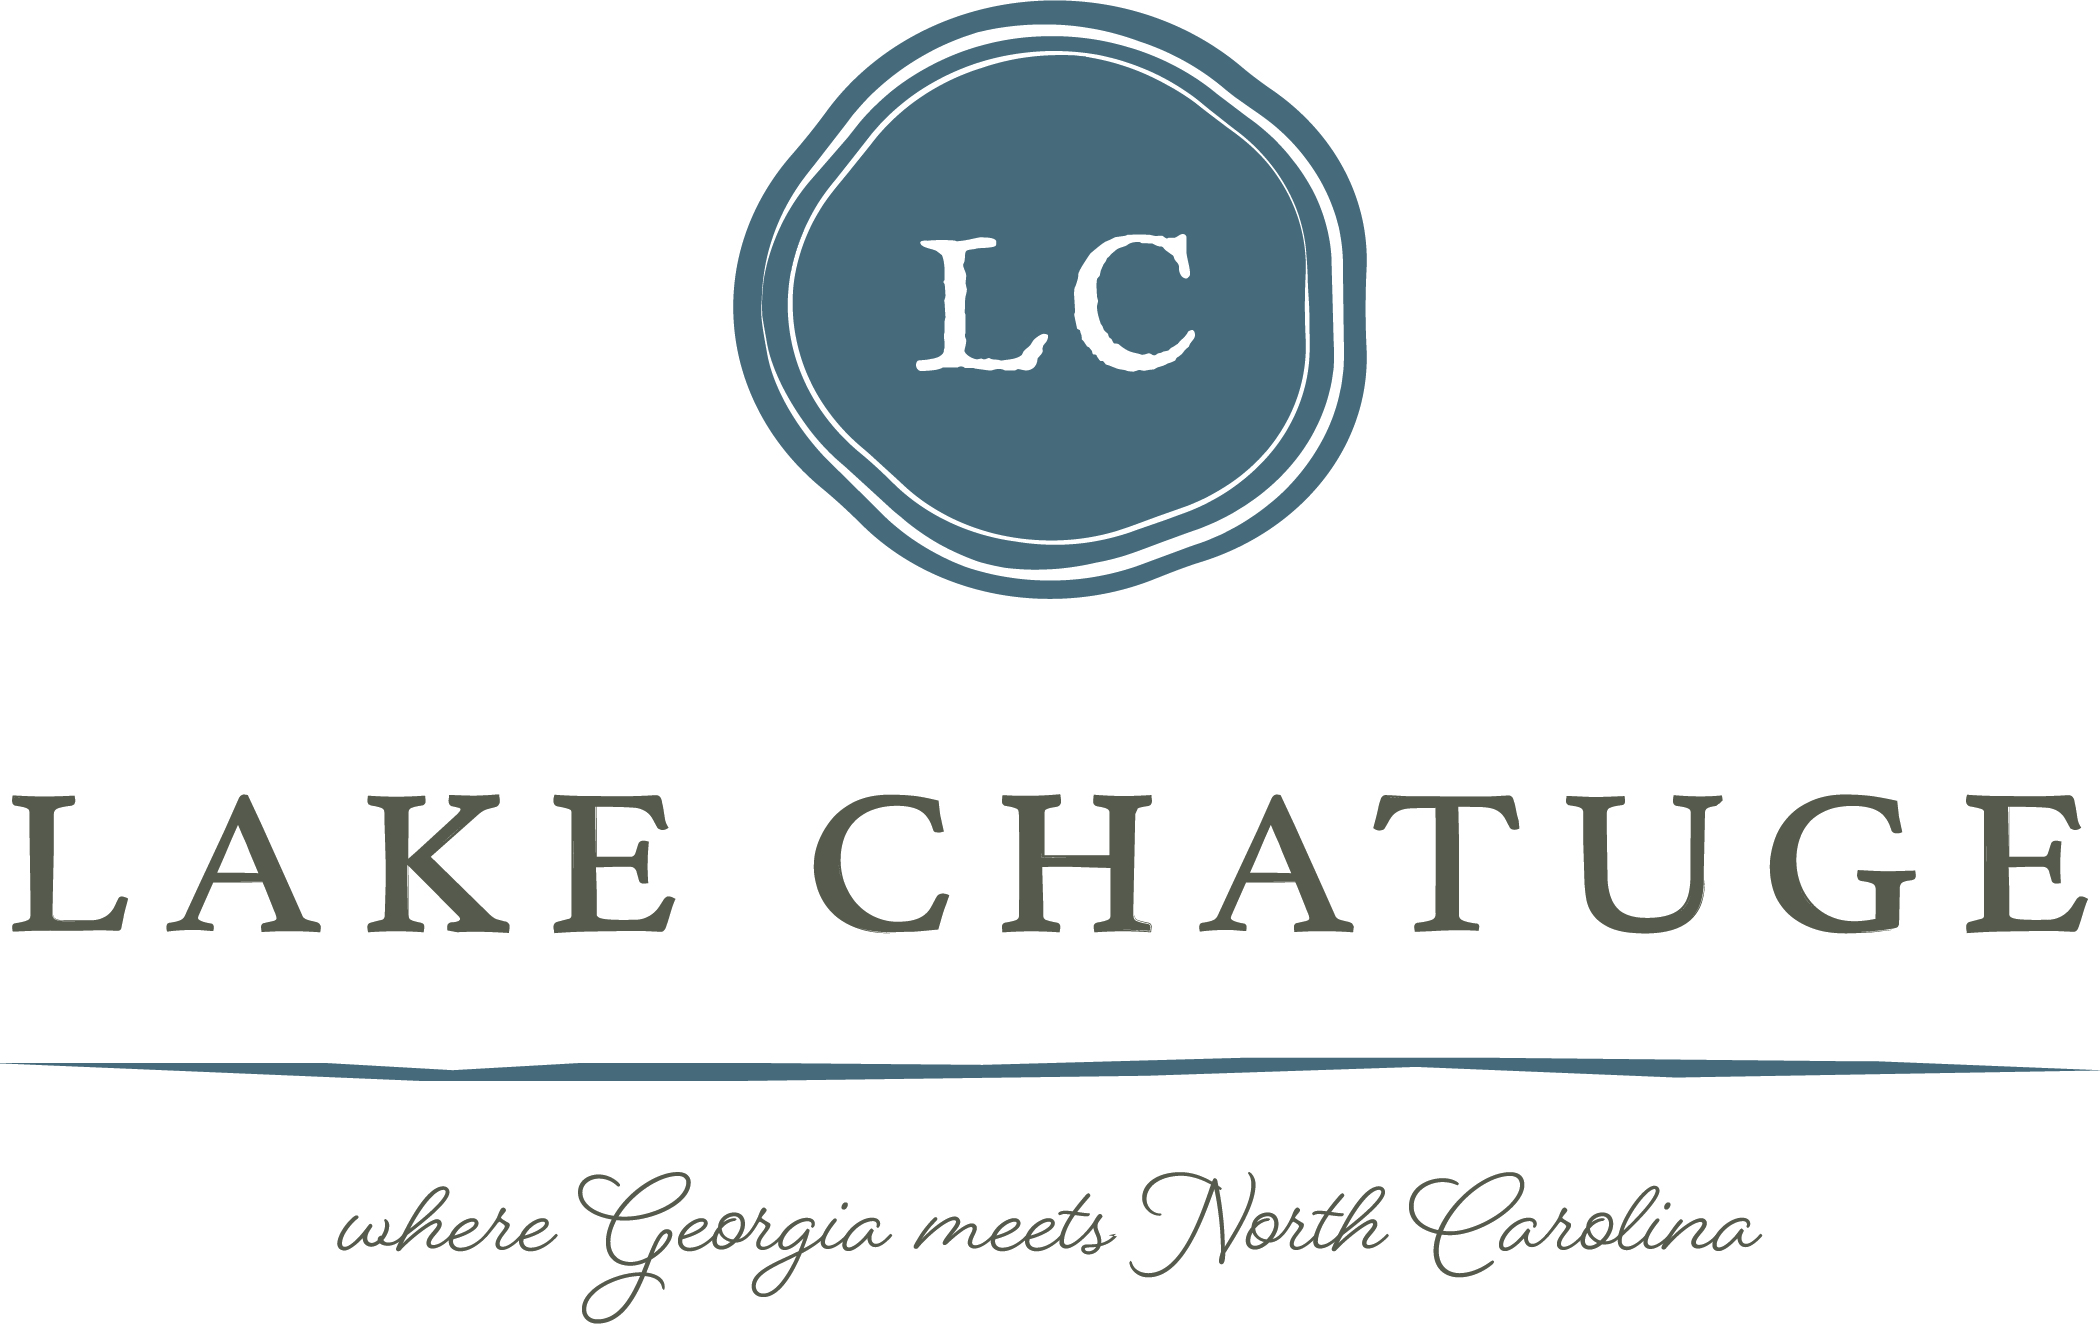 LakeChatuge-Branding_CMYK